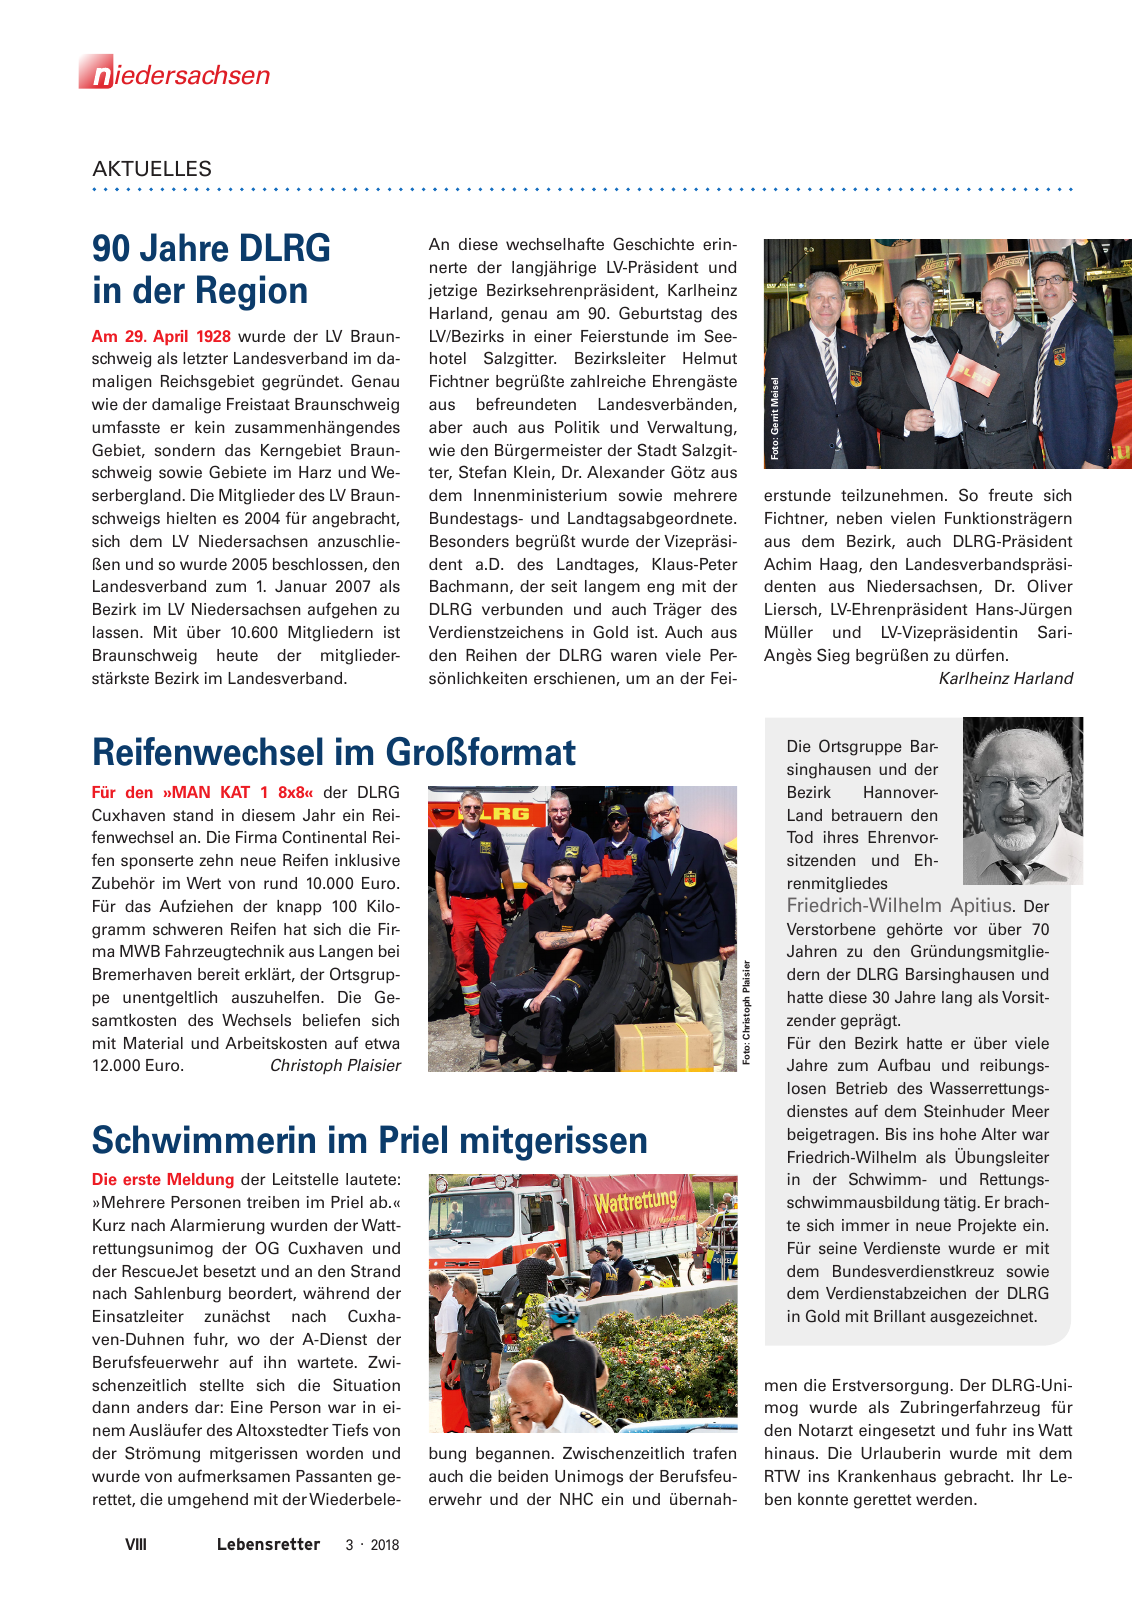 Vorschau Lebensretter 3/2018 - Regionalausgabe Niedersachsen Seite 10